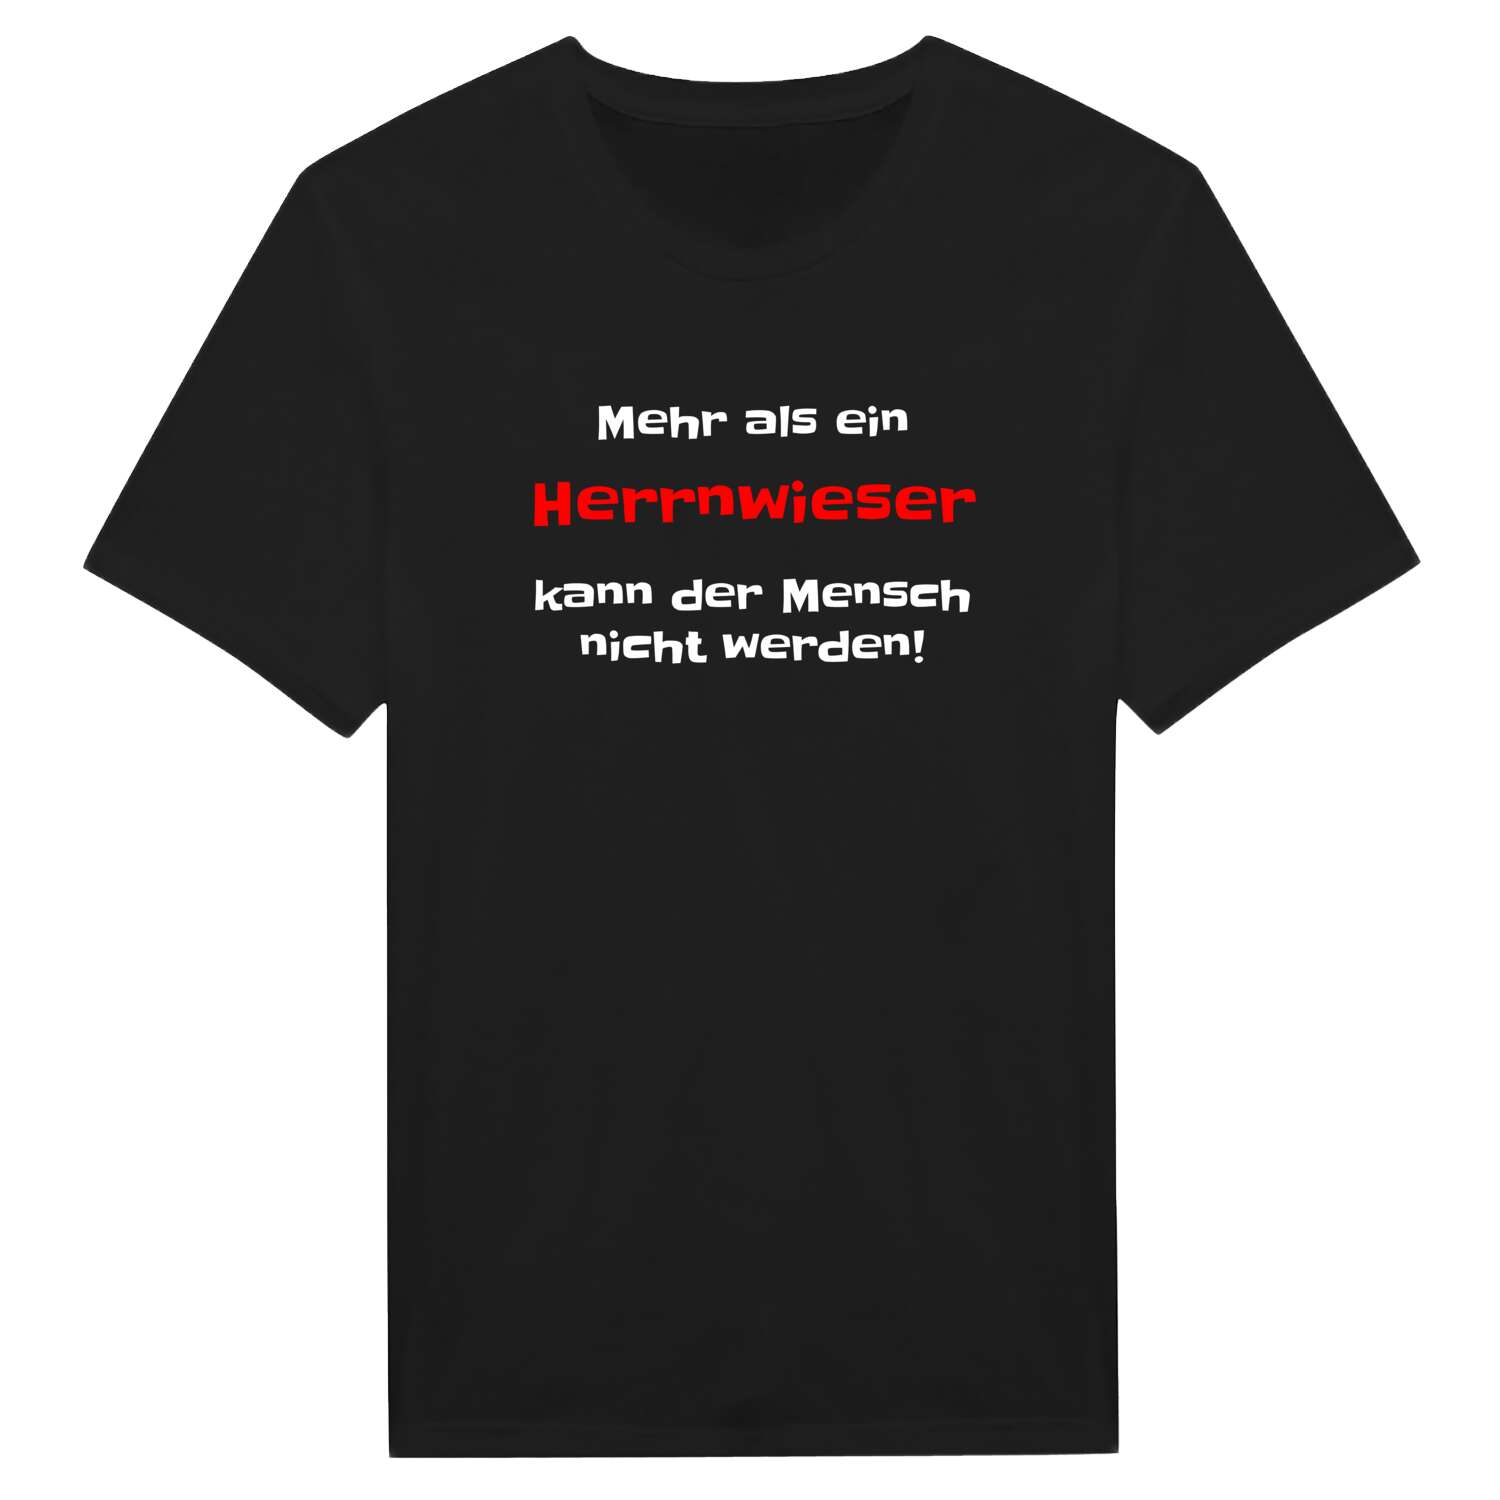 Herrnwies T-Shirt »Mehr als ein«